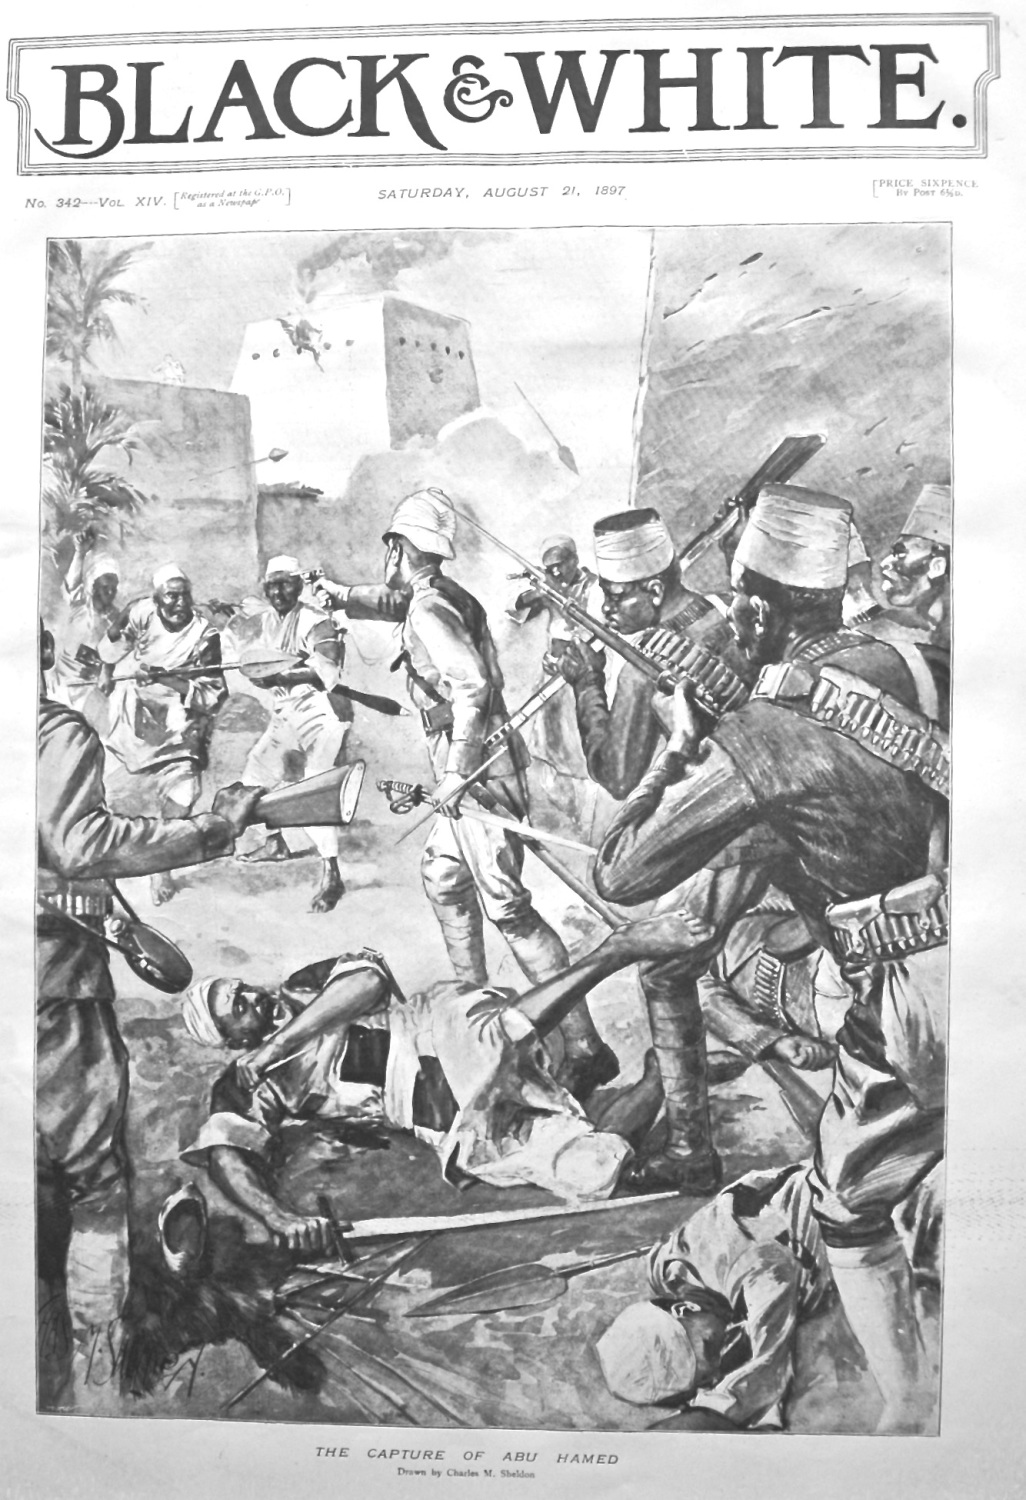 The Capture of Abu Hamed. 1897.